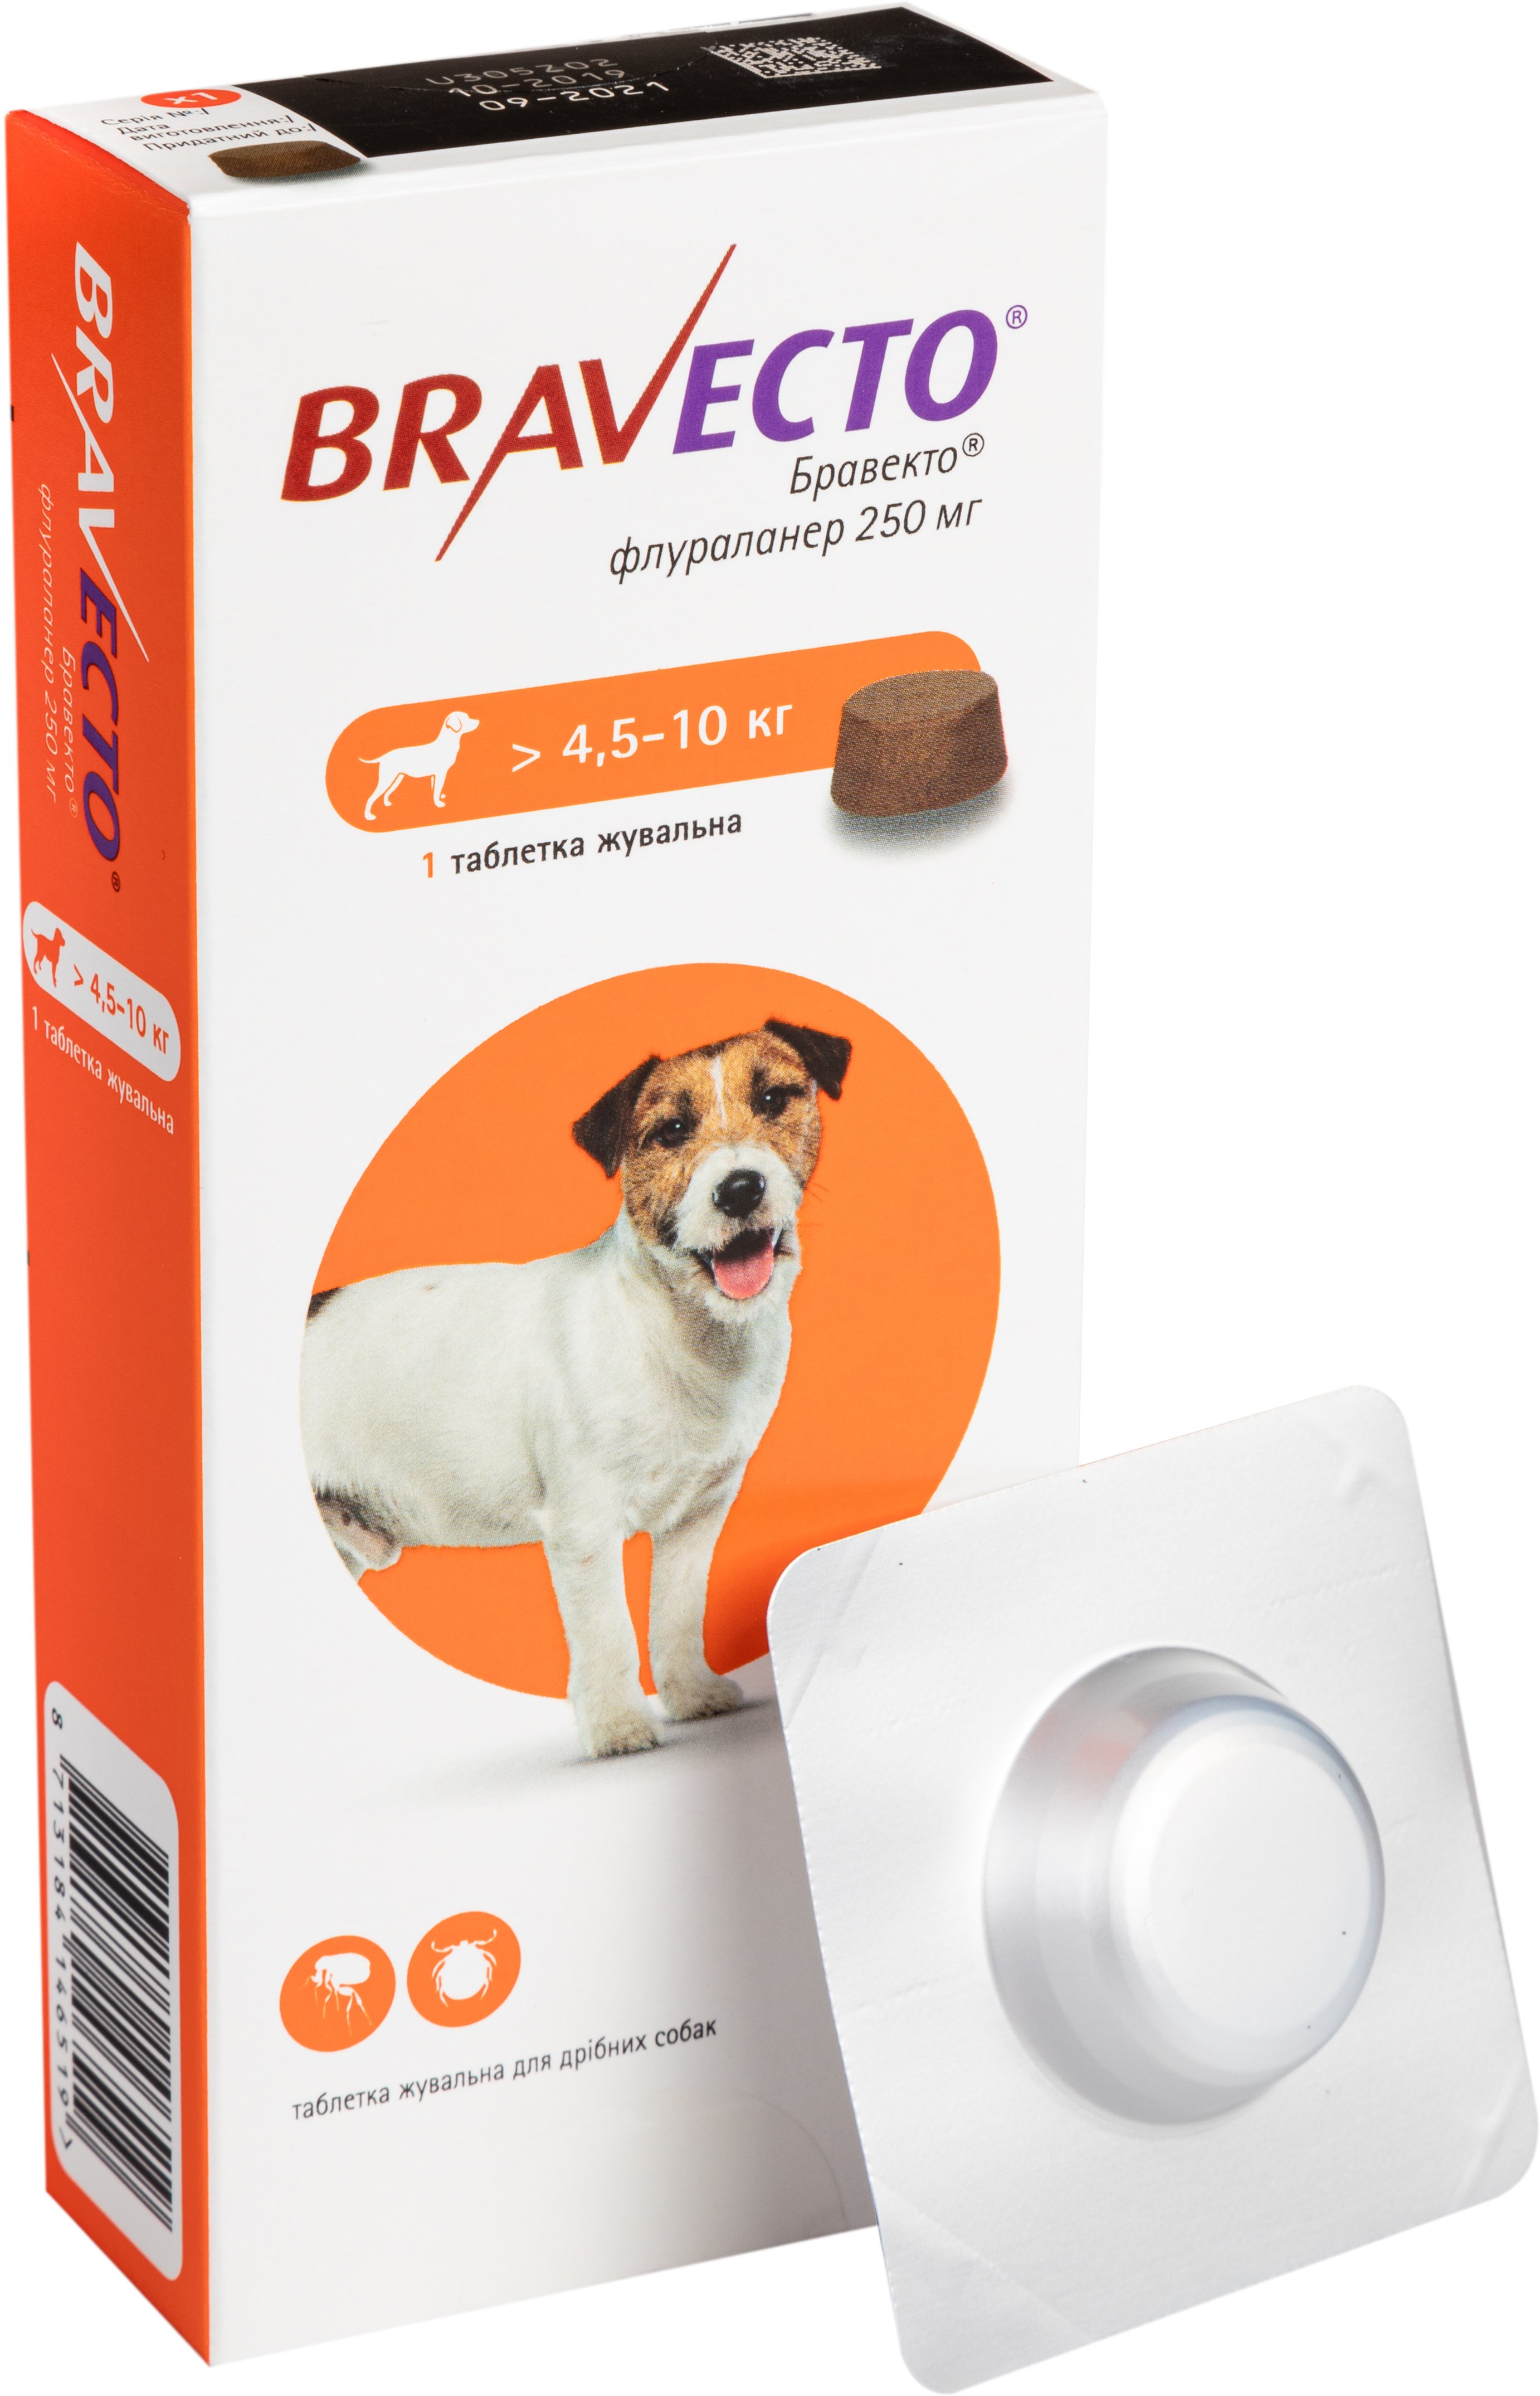 Жевательная таблетка Bravecto от блох и клещей для собак с весом 4,5-10 кг - фото 1